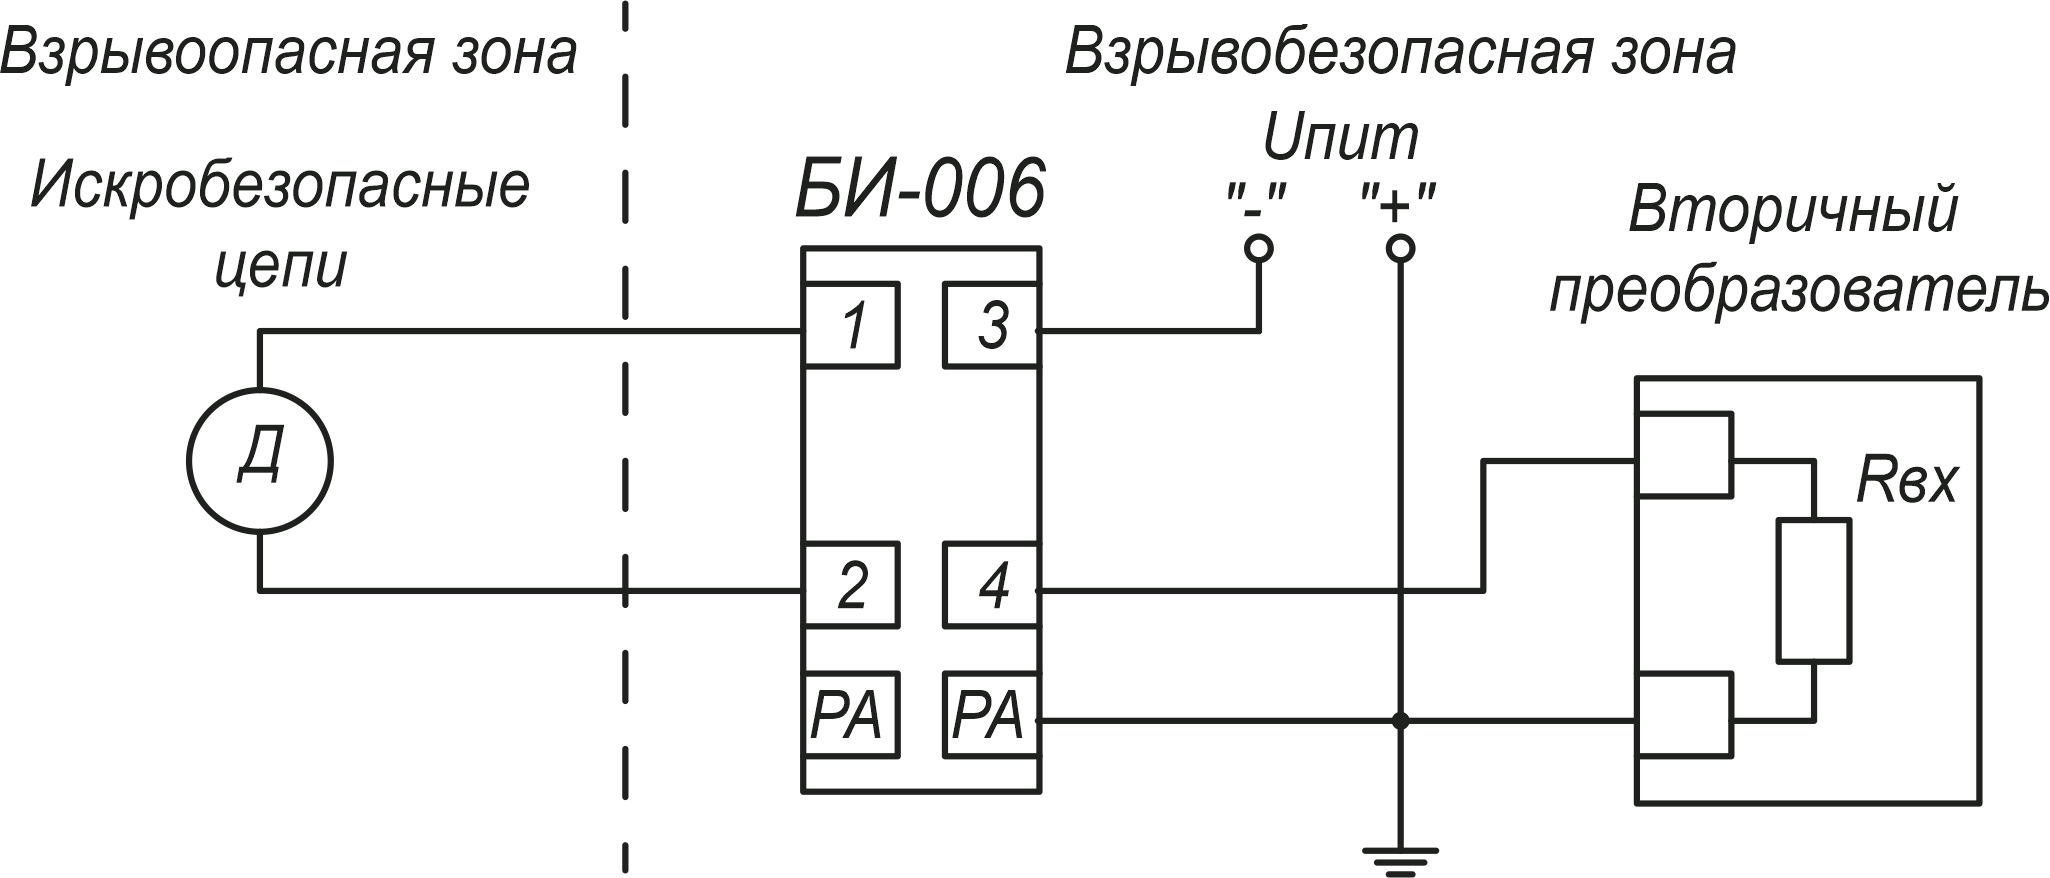 БИ-006 Типовая схема подключения